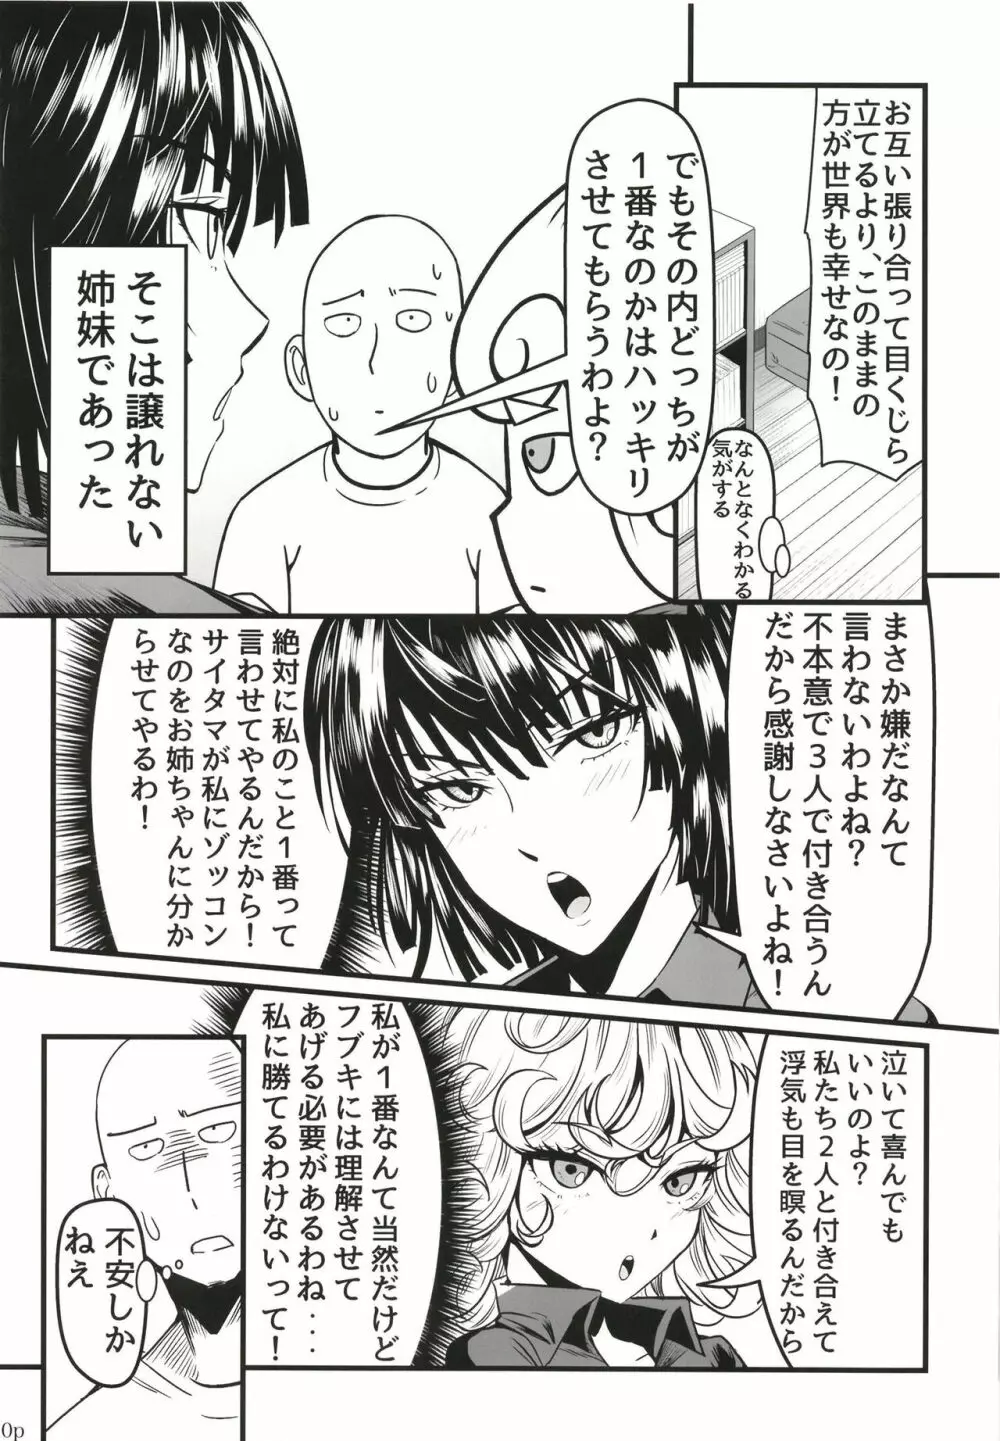 でこぼこLove sister 5撃目 - page20